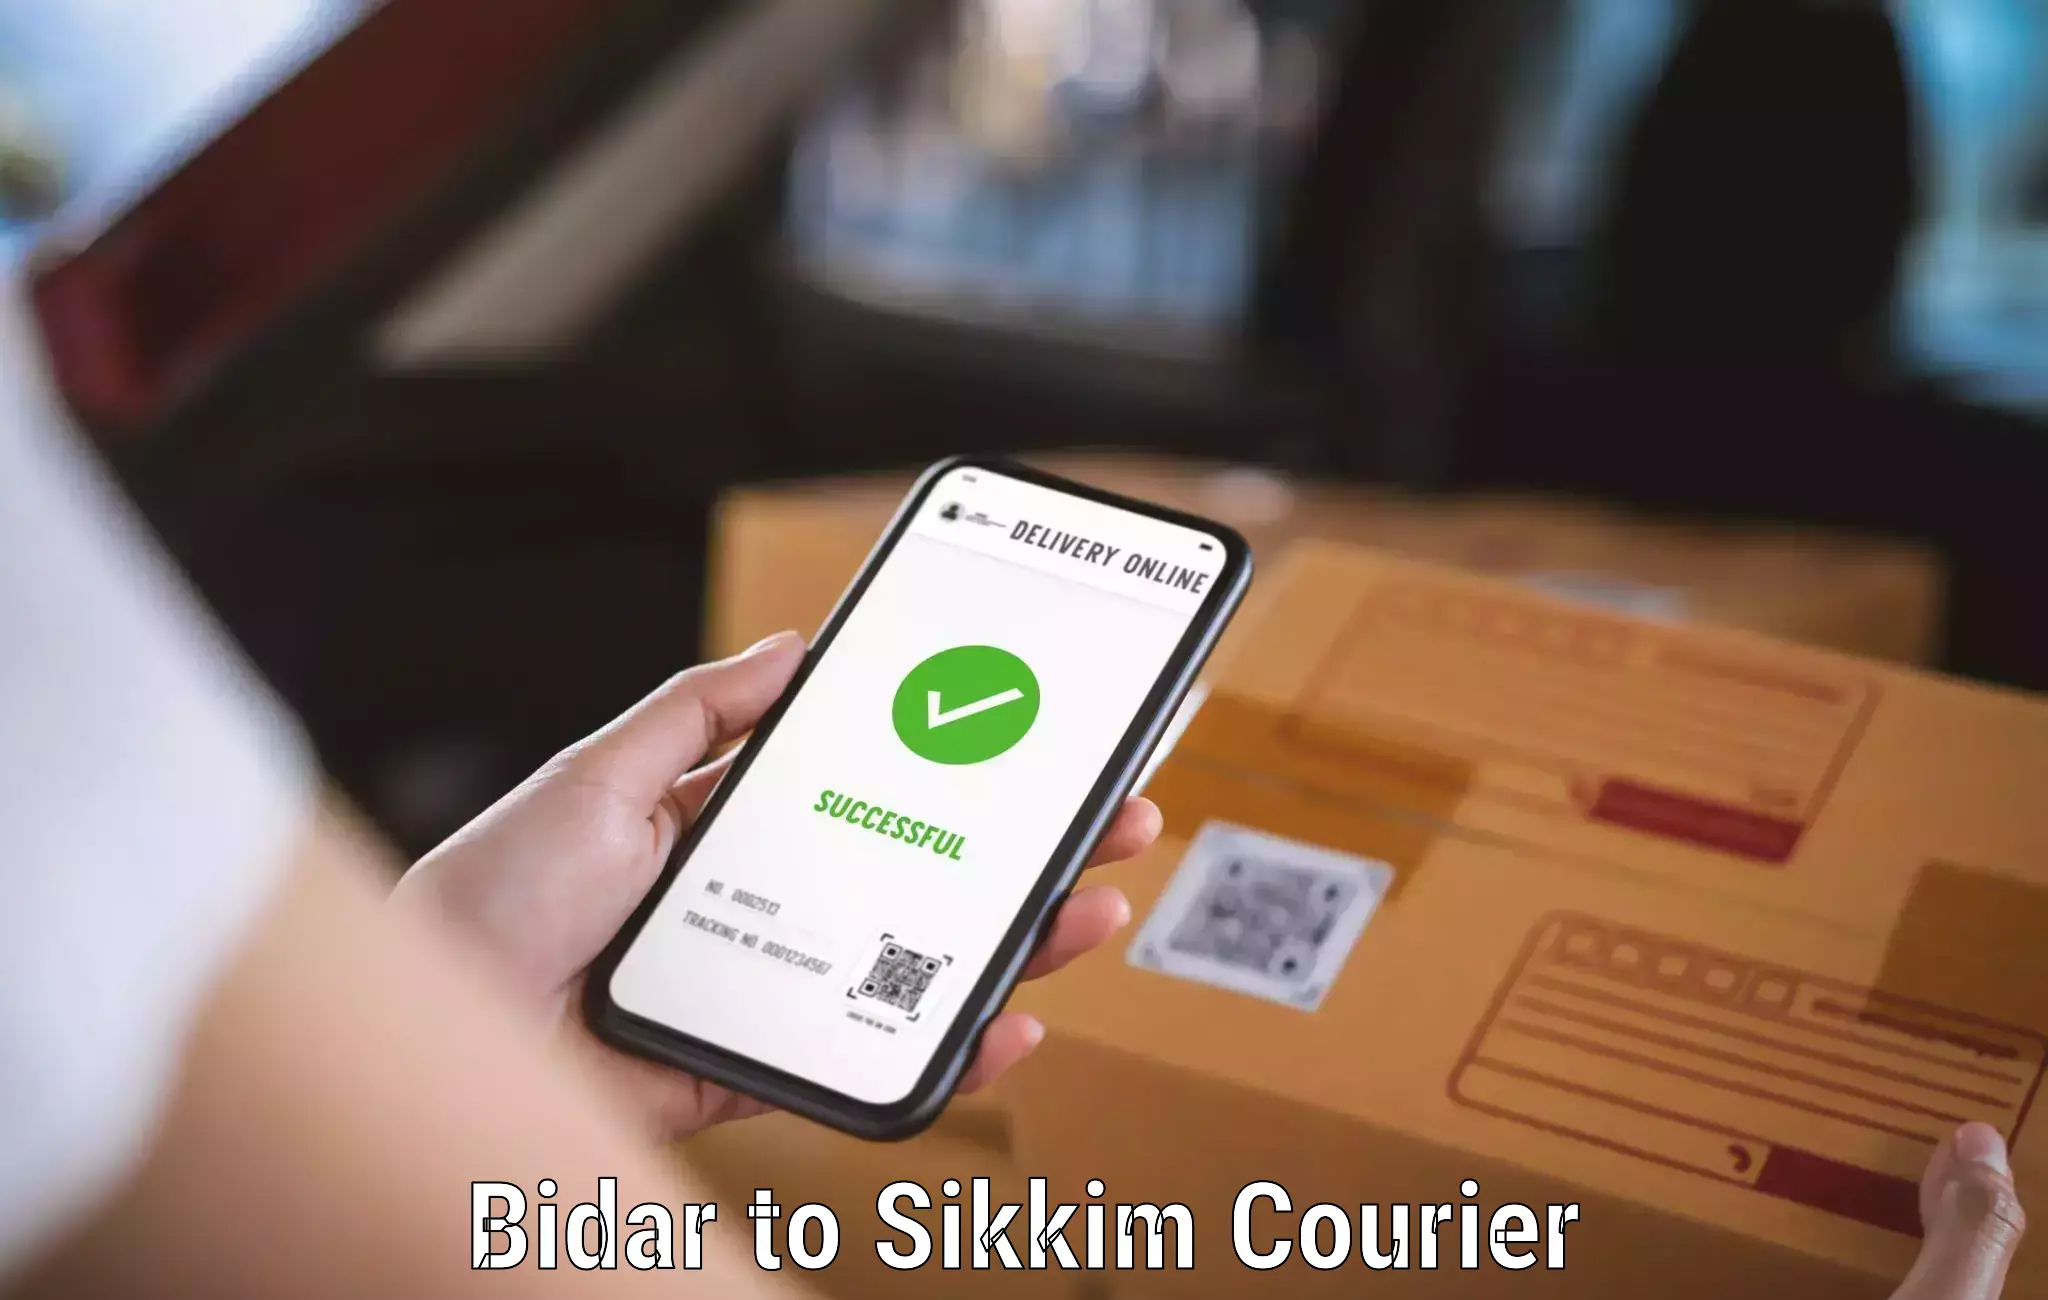 Doorstep delivery service Bidar to Sikkim